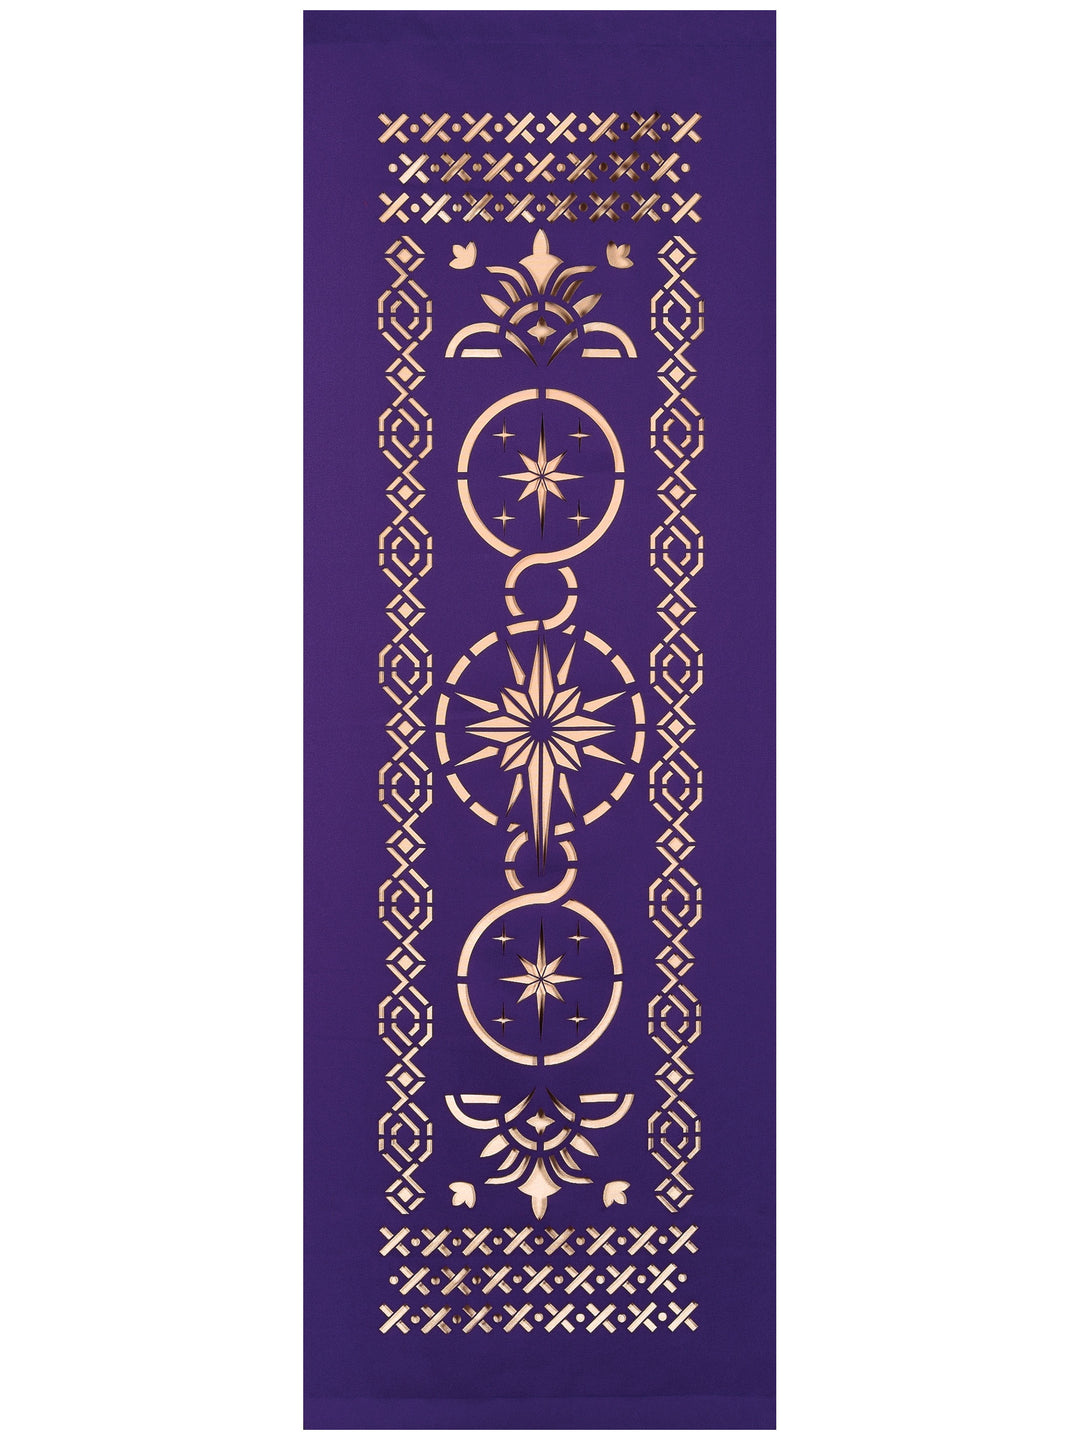 Ecclesiastical Star Banner - Liturgical Banners - PraiseBanners